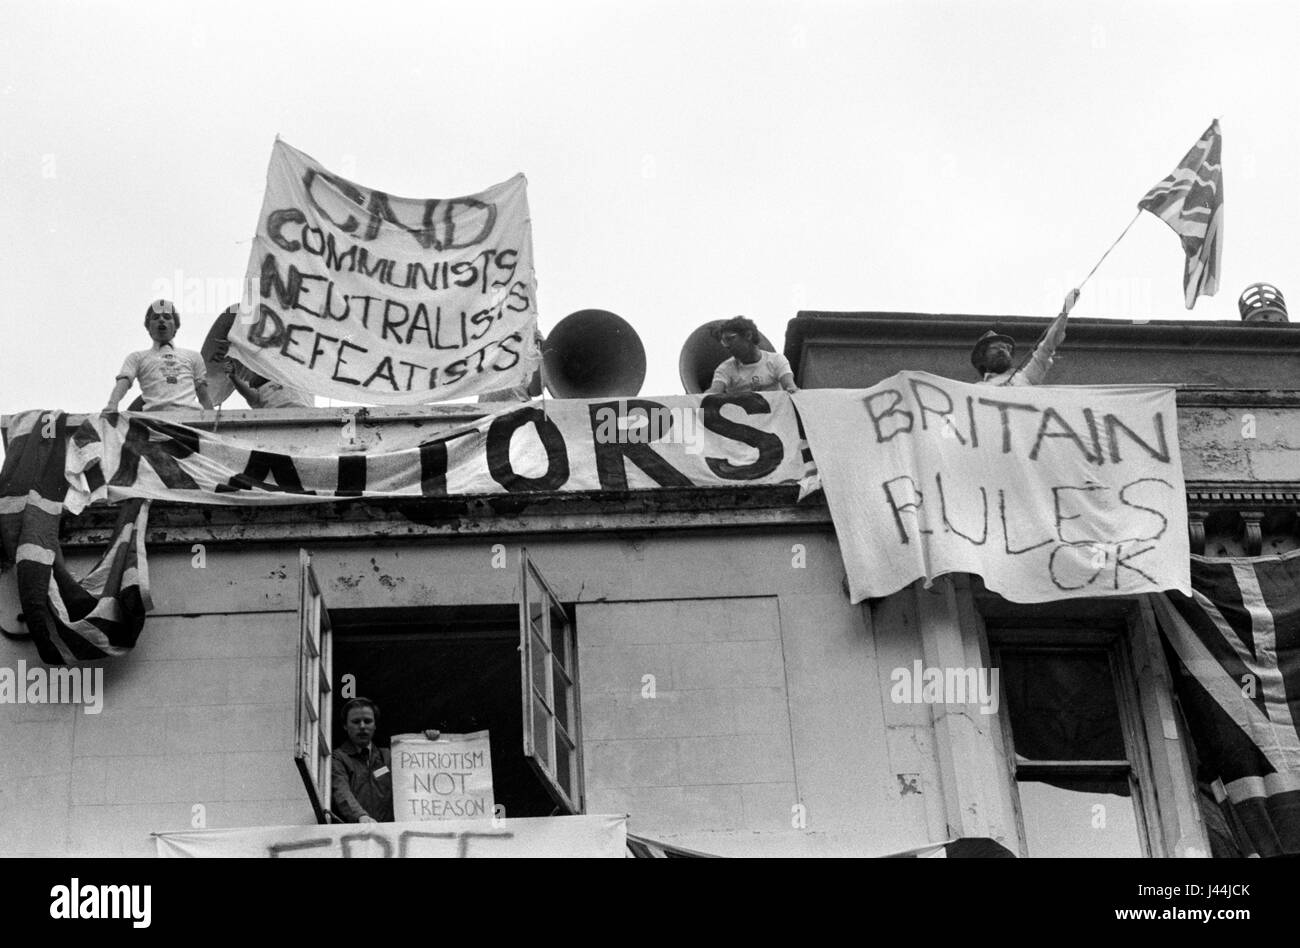 Pro Falkland war demo Londra Maggio 1983 persone appendere striscioni da edificio a Whitehall London CND comunisti Neutralists Defeatists, il patriottismo non tradimento, HOMER SYKES Foto Stock